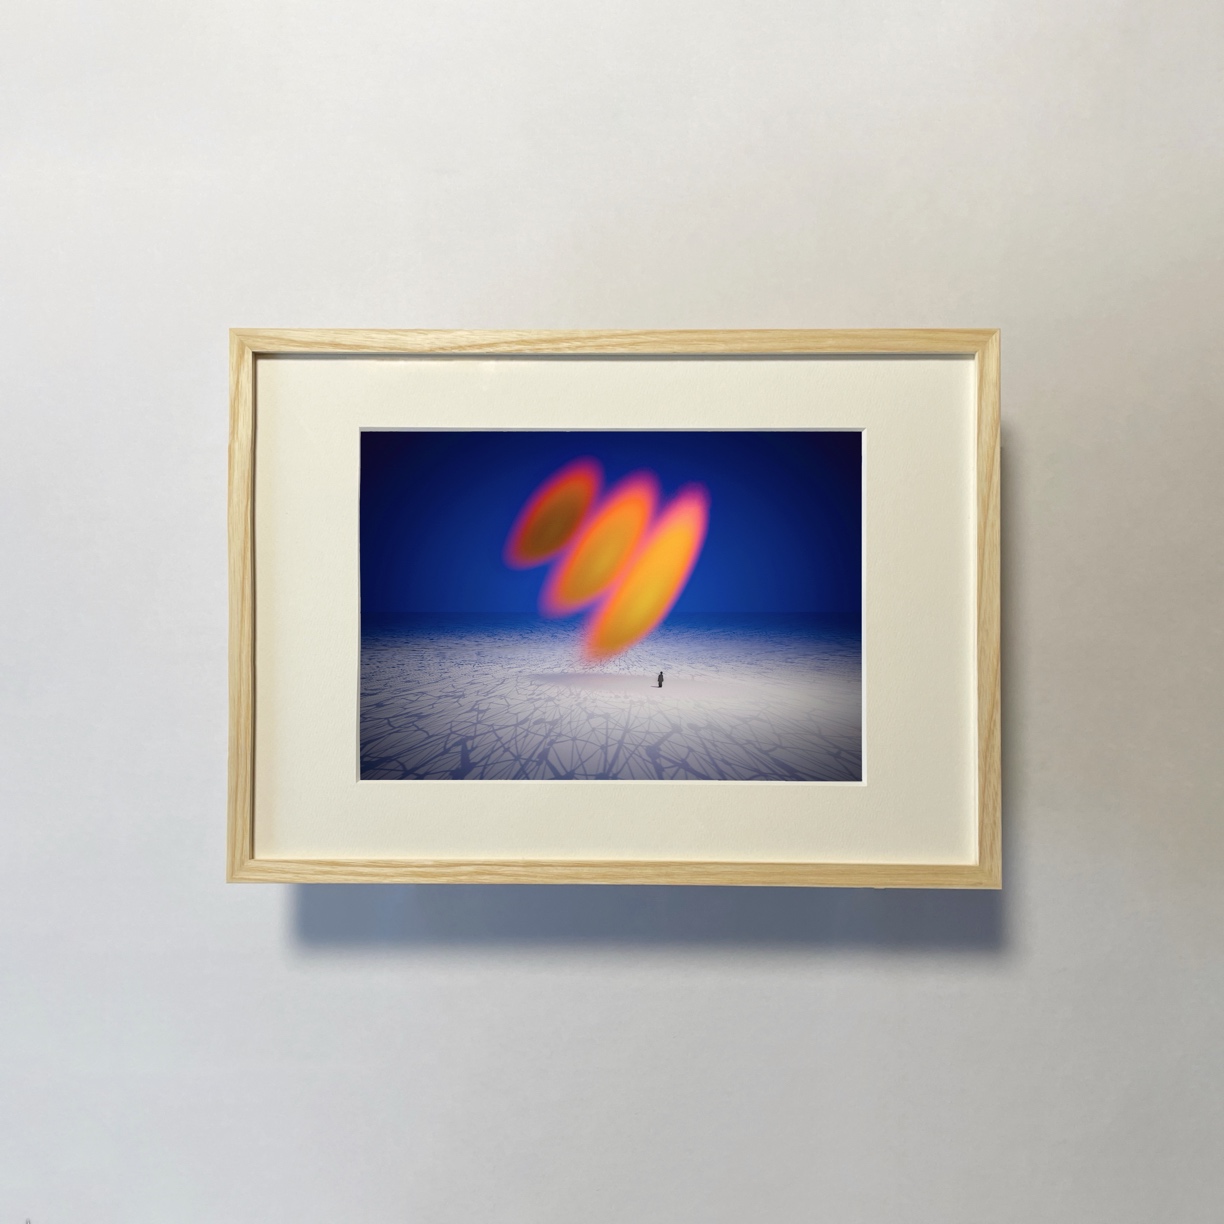 Atsushigraphのジークレー版画Heaterのイメージ画像です。